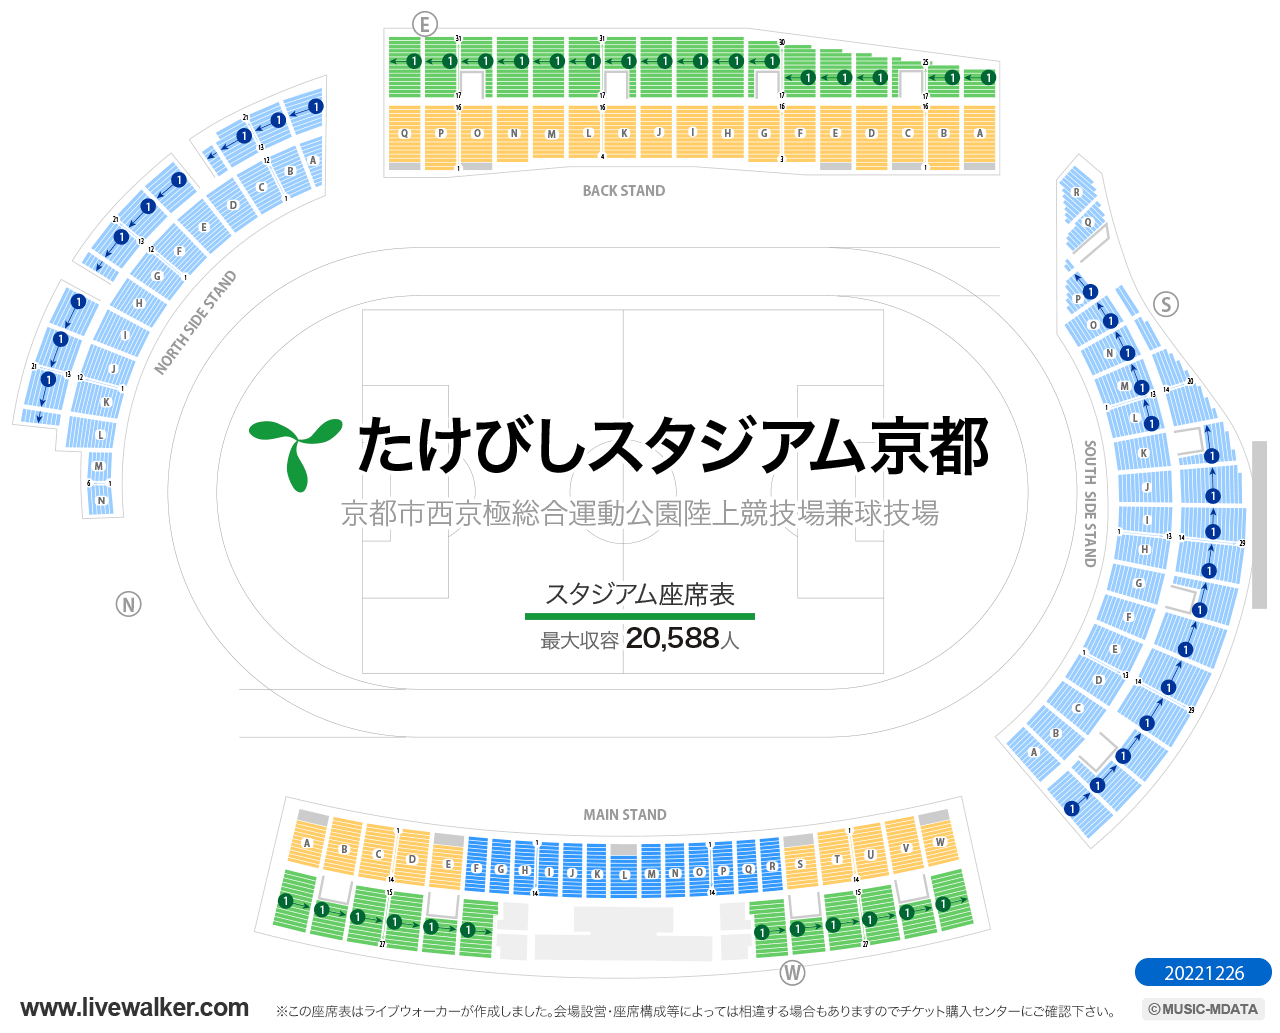 たけびしスタジアム京都スタジアムの座席表